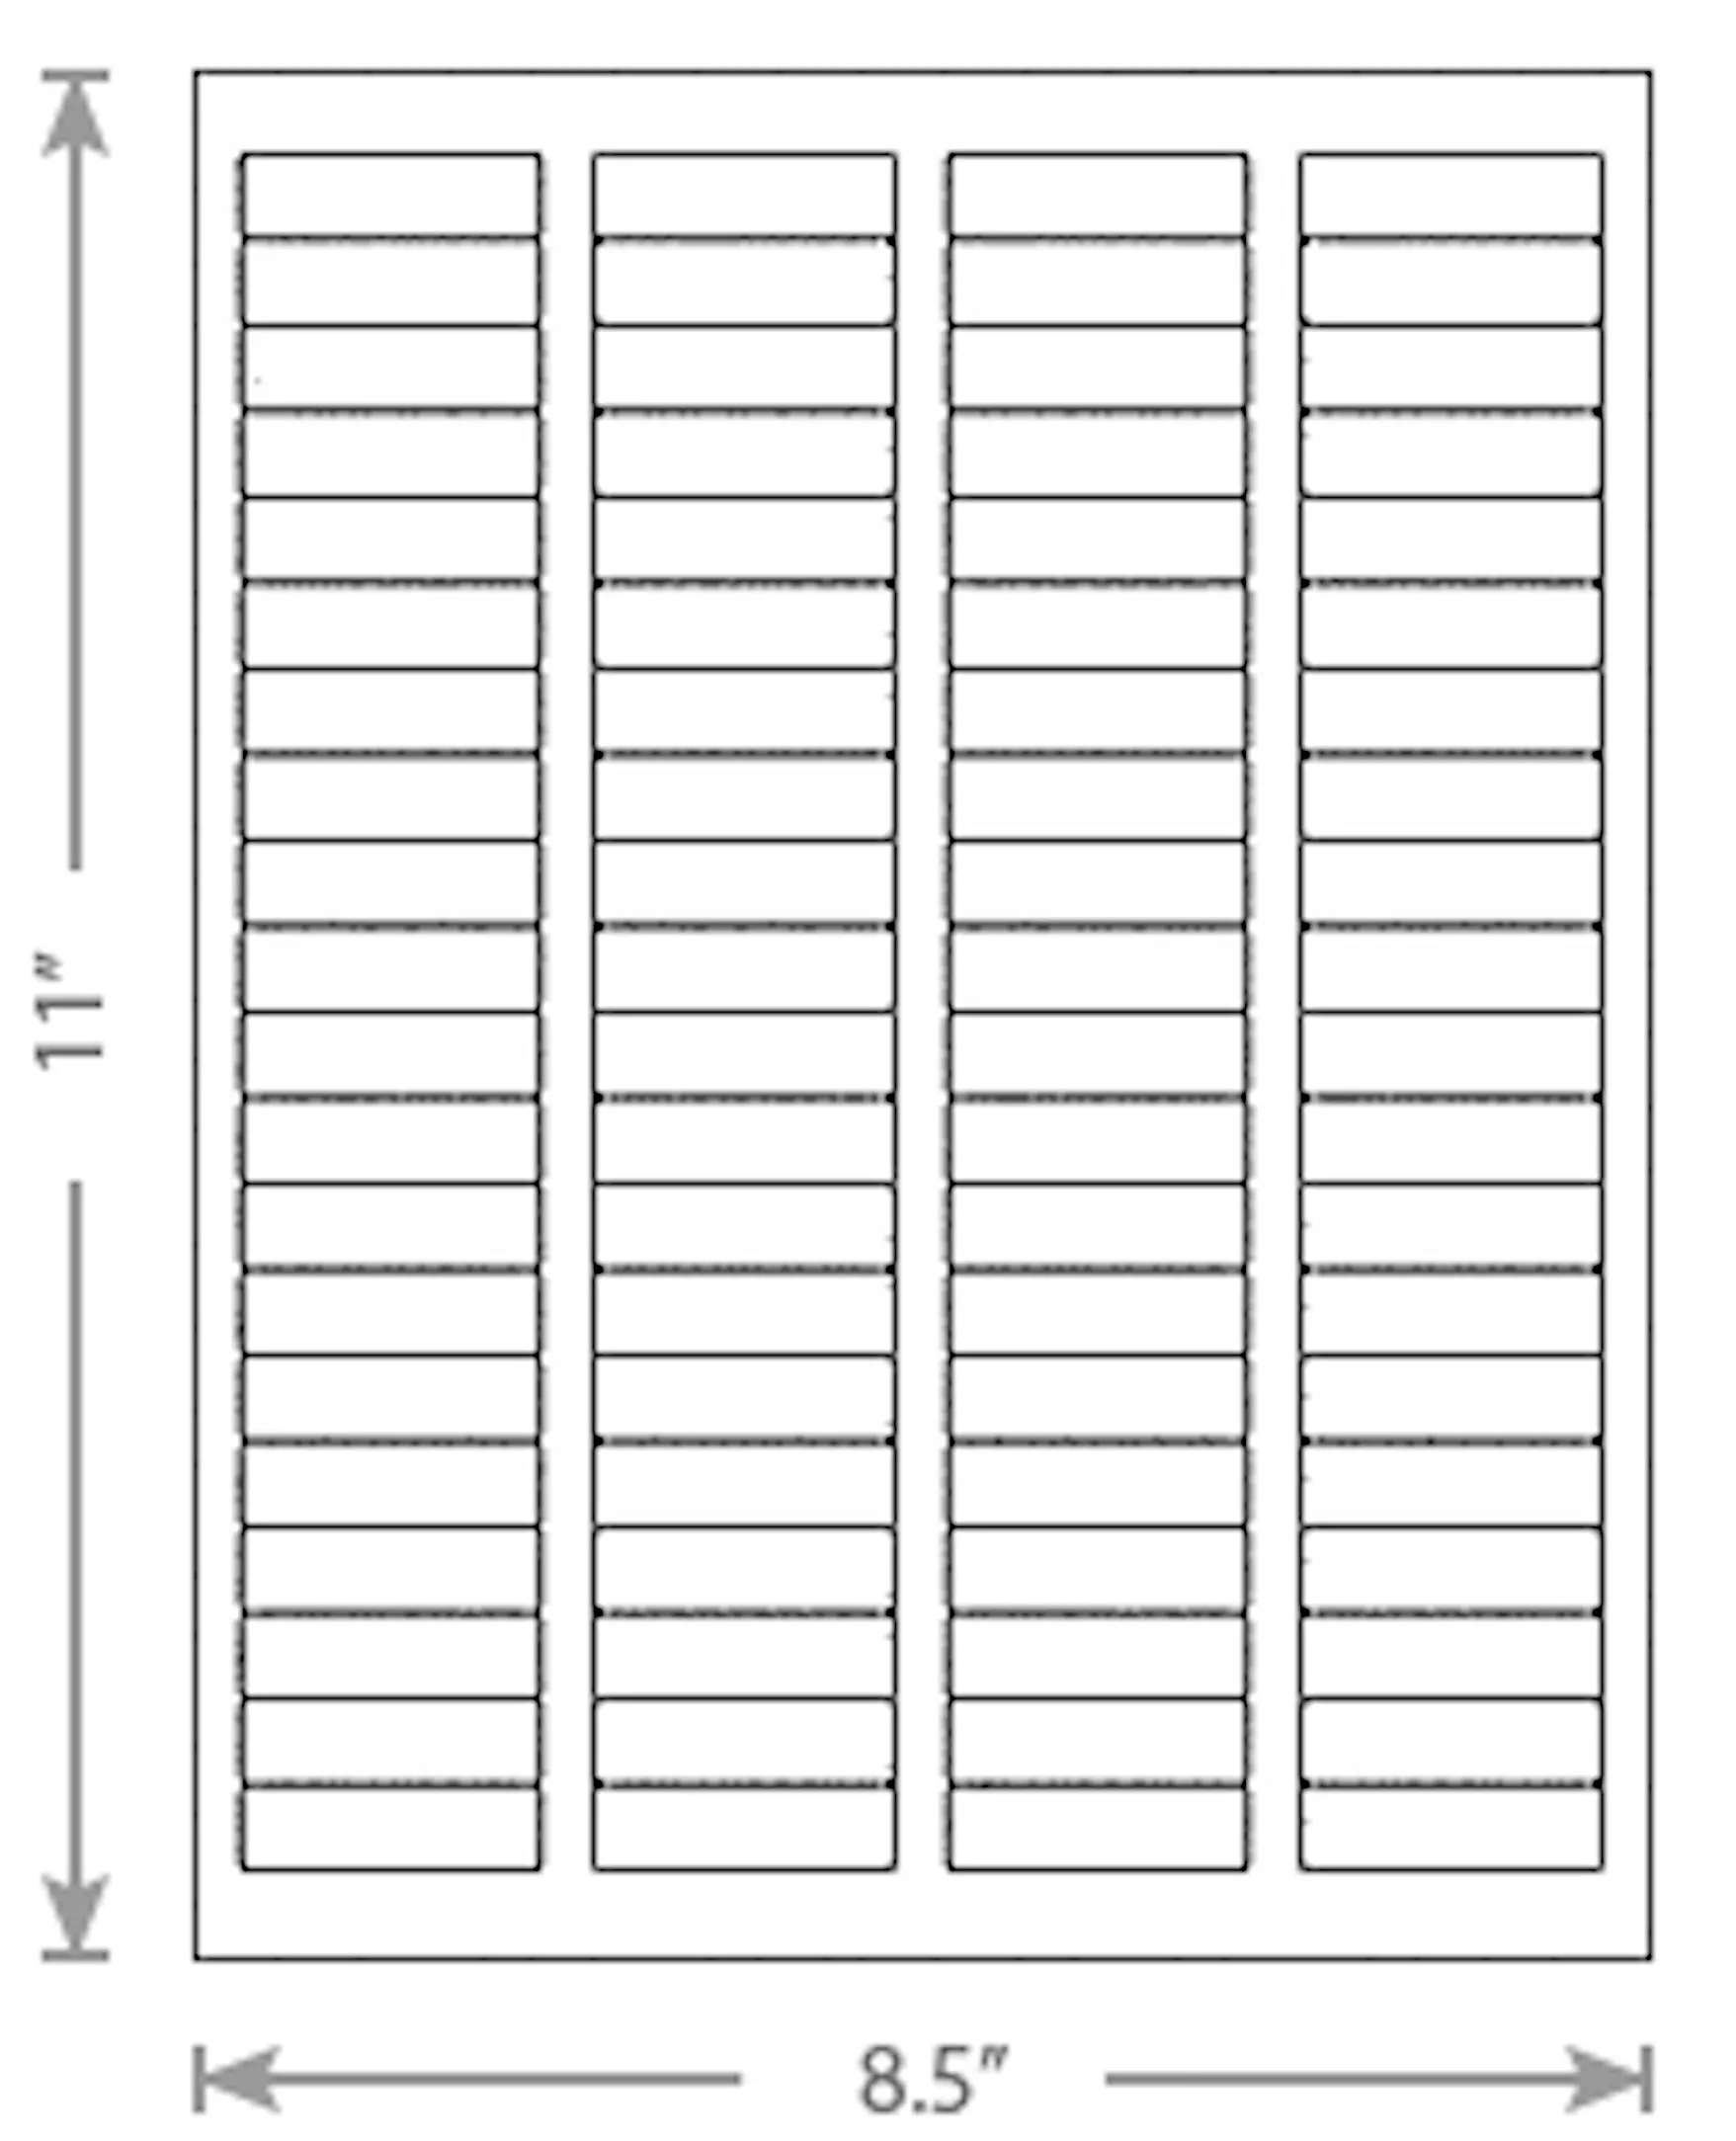 80Up etiqueta adhesiva de etiquetas de papel 1/2x1-1/3 "carta" dirección de envío etiquetas